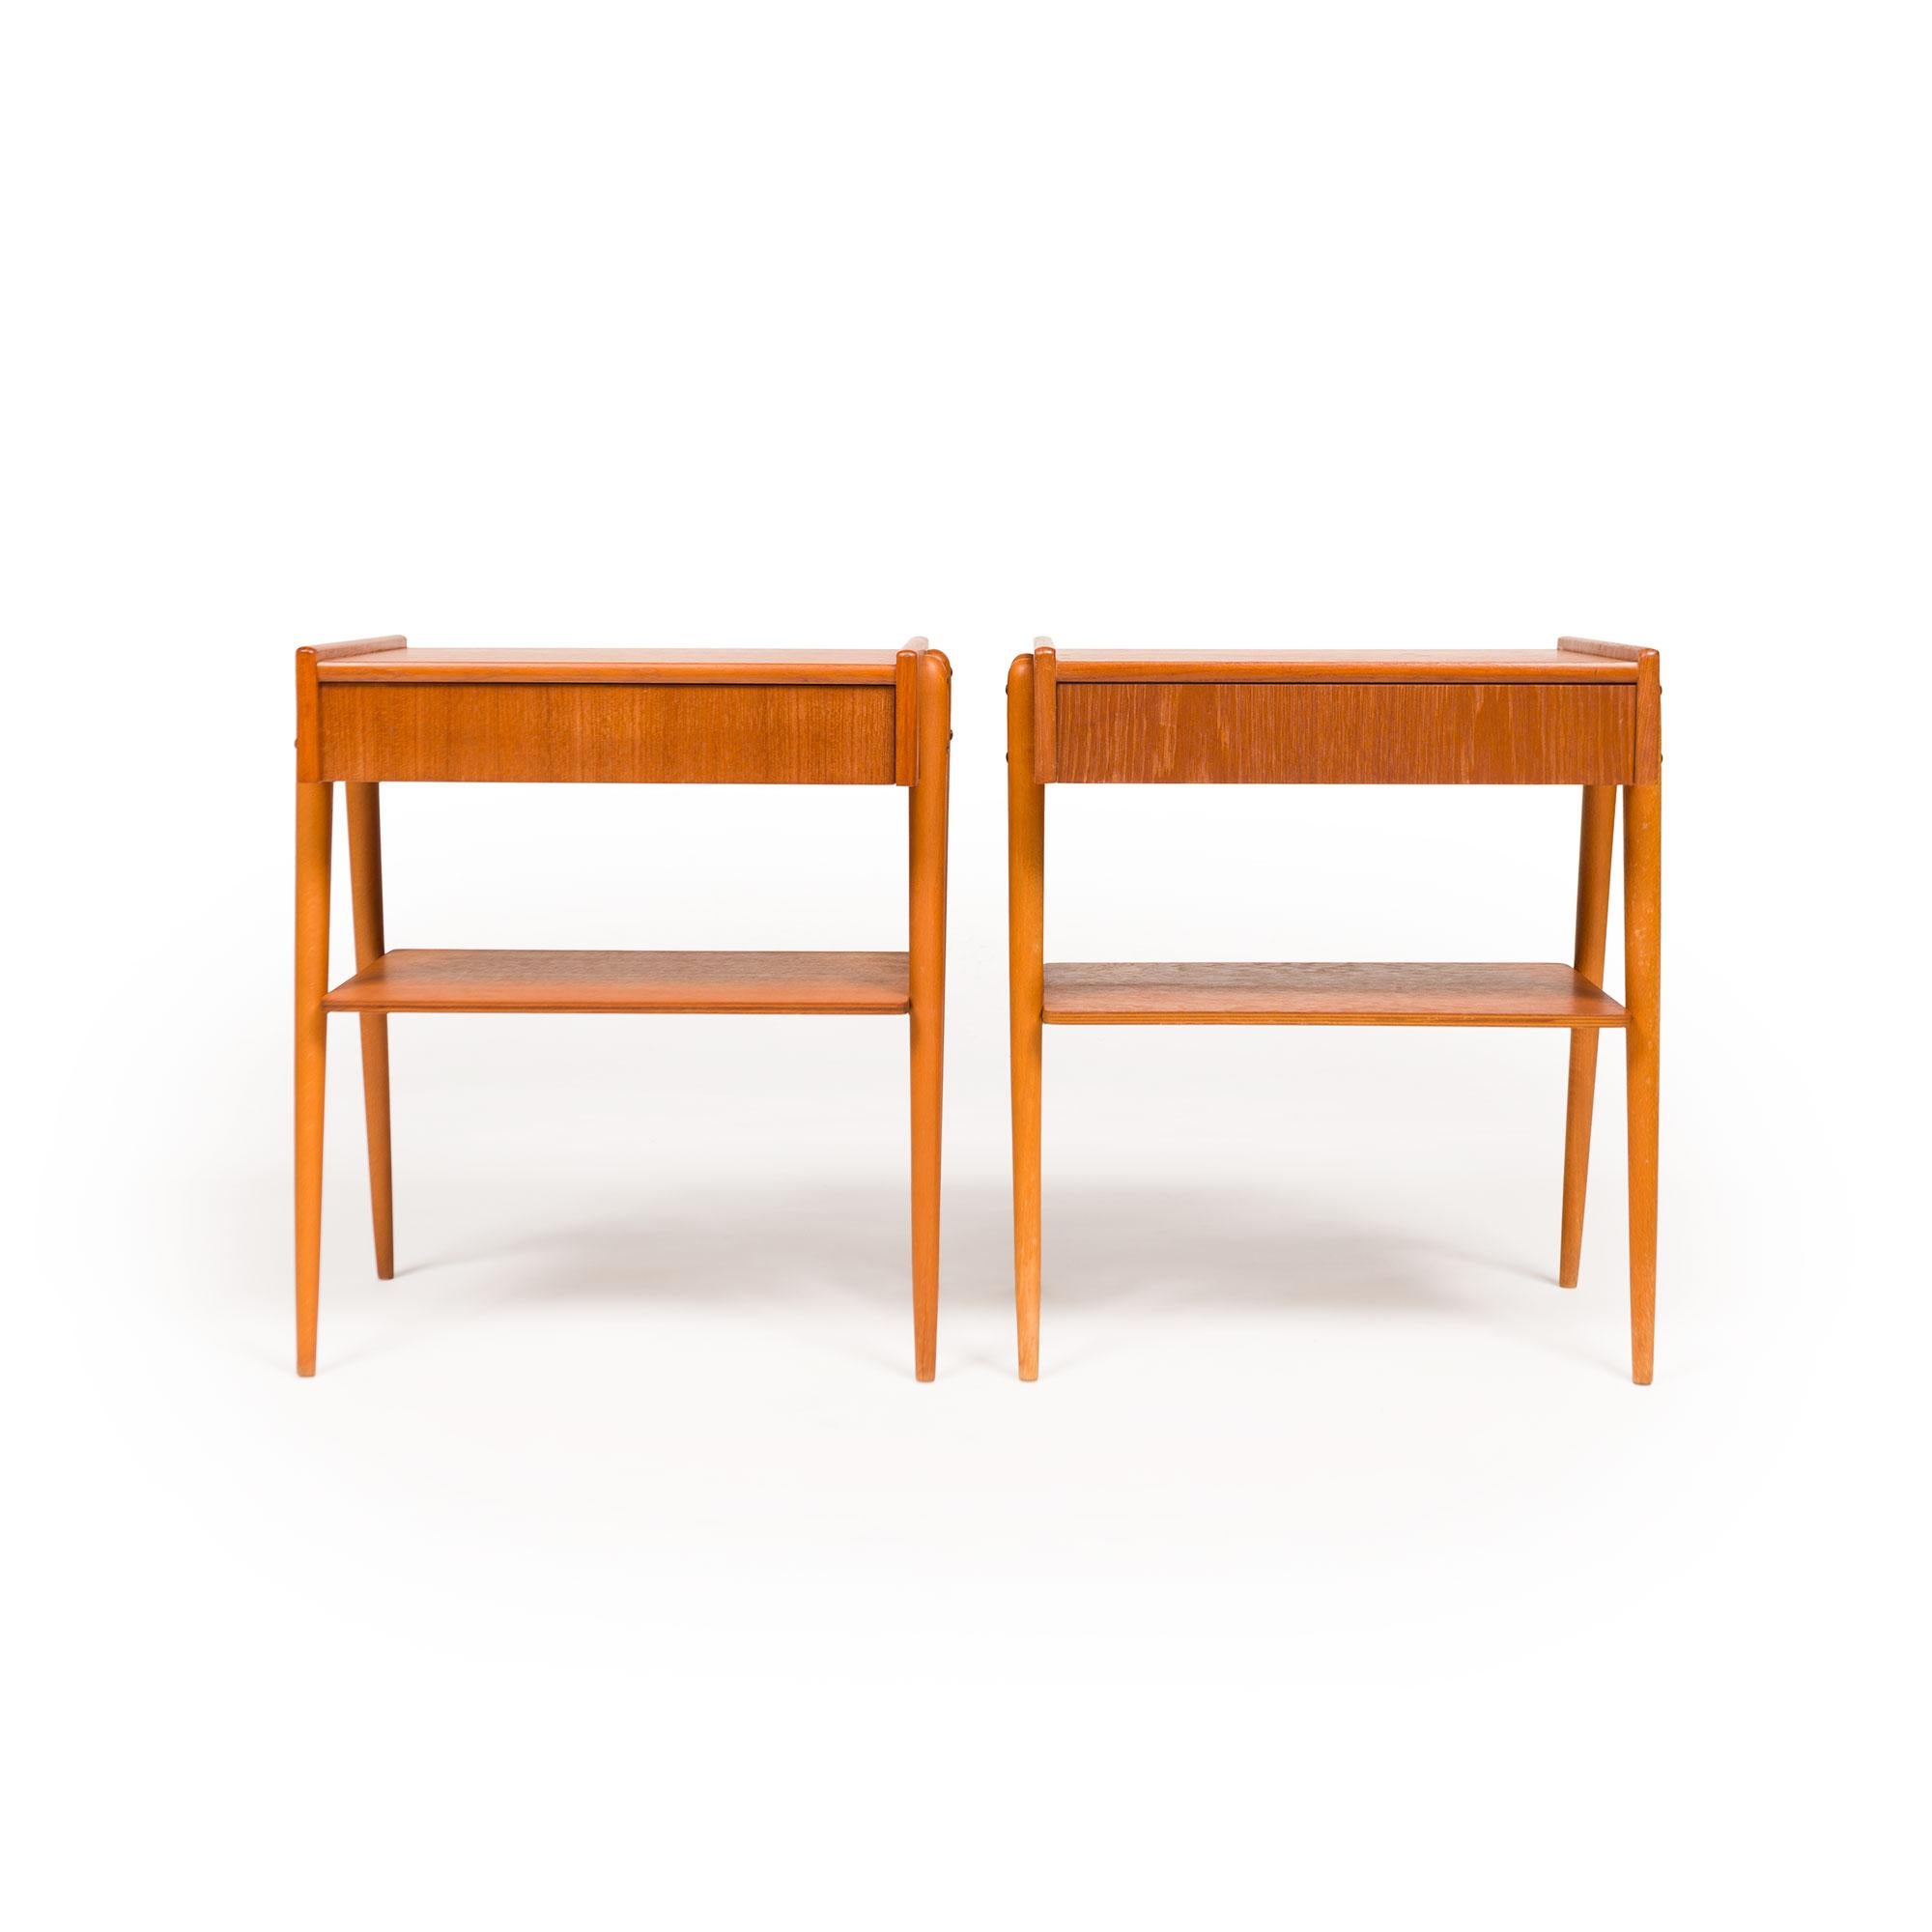 Le mobilier danois du milieu du siècle incarne les principes du design scandinave avec son élégance intemporelle, sa fonctionnalité et son savoir-faire exceptionnel. Florissante dans les années 1950 et 1960, elle reflète les sensibilités